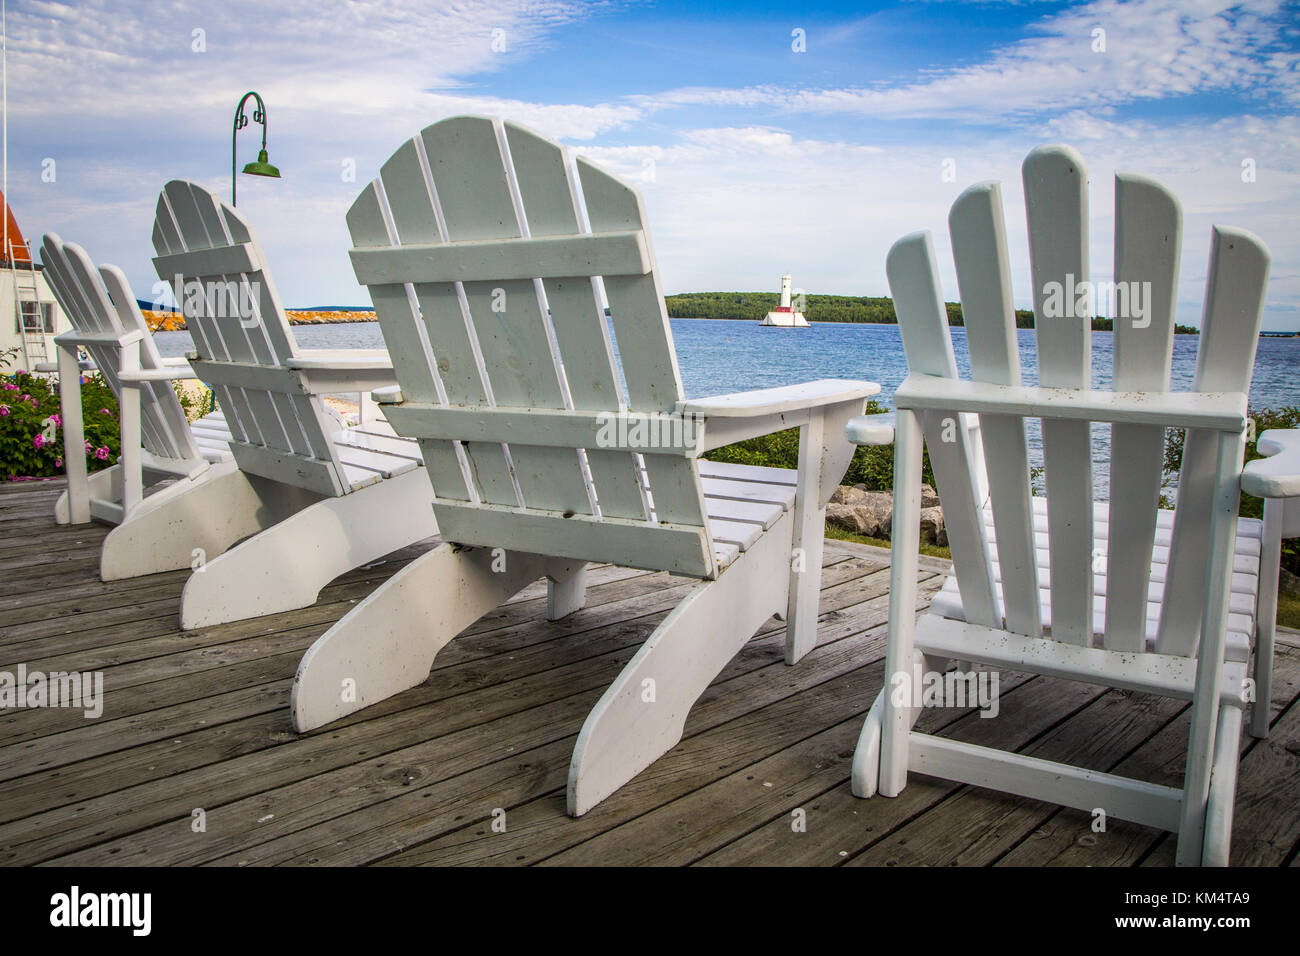 Style de vie côtière. Chaises Adirondack blanc sur un pont au bord de l'eau en bois avec une vue front de mer, et le phare. Mackinaw Island, Michigan, USA. Banque D'Images